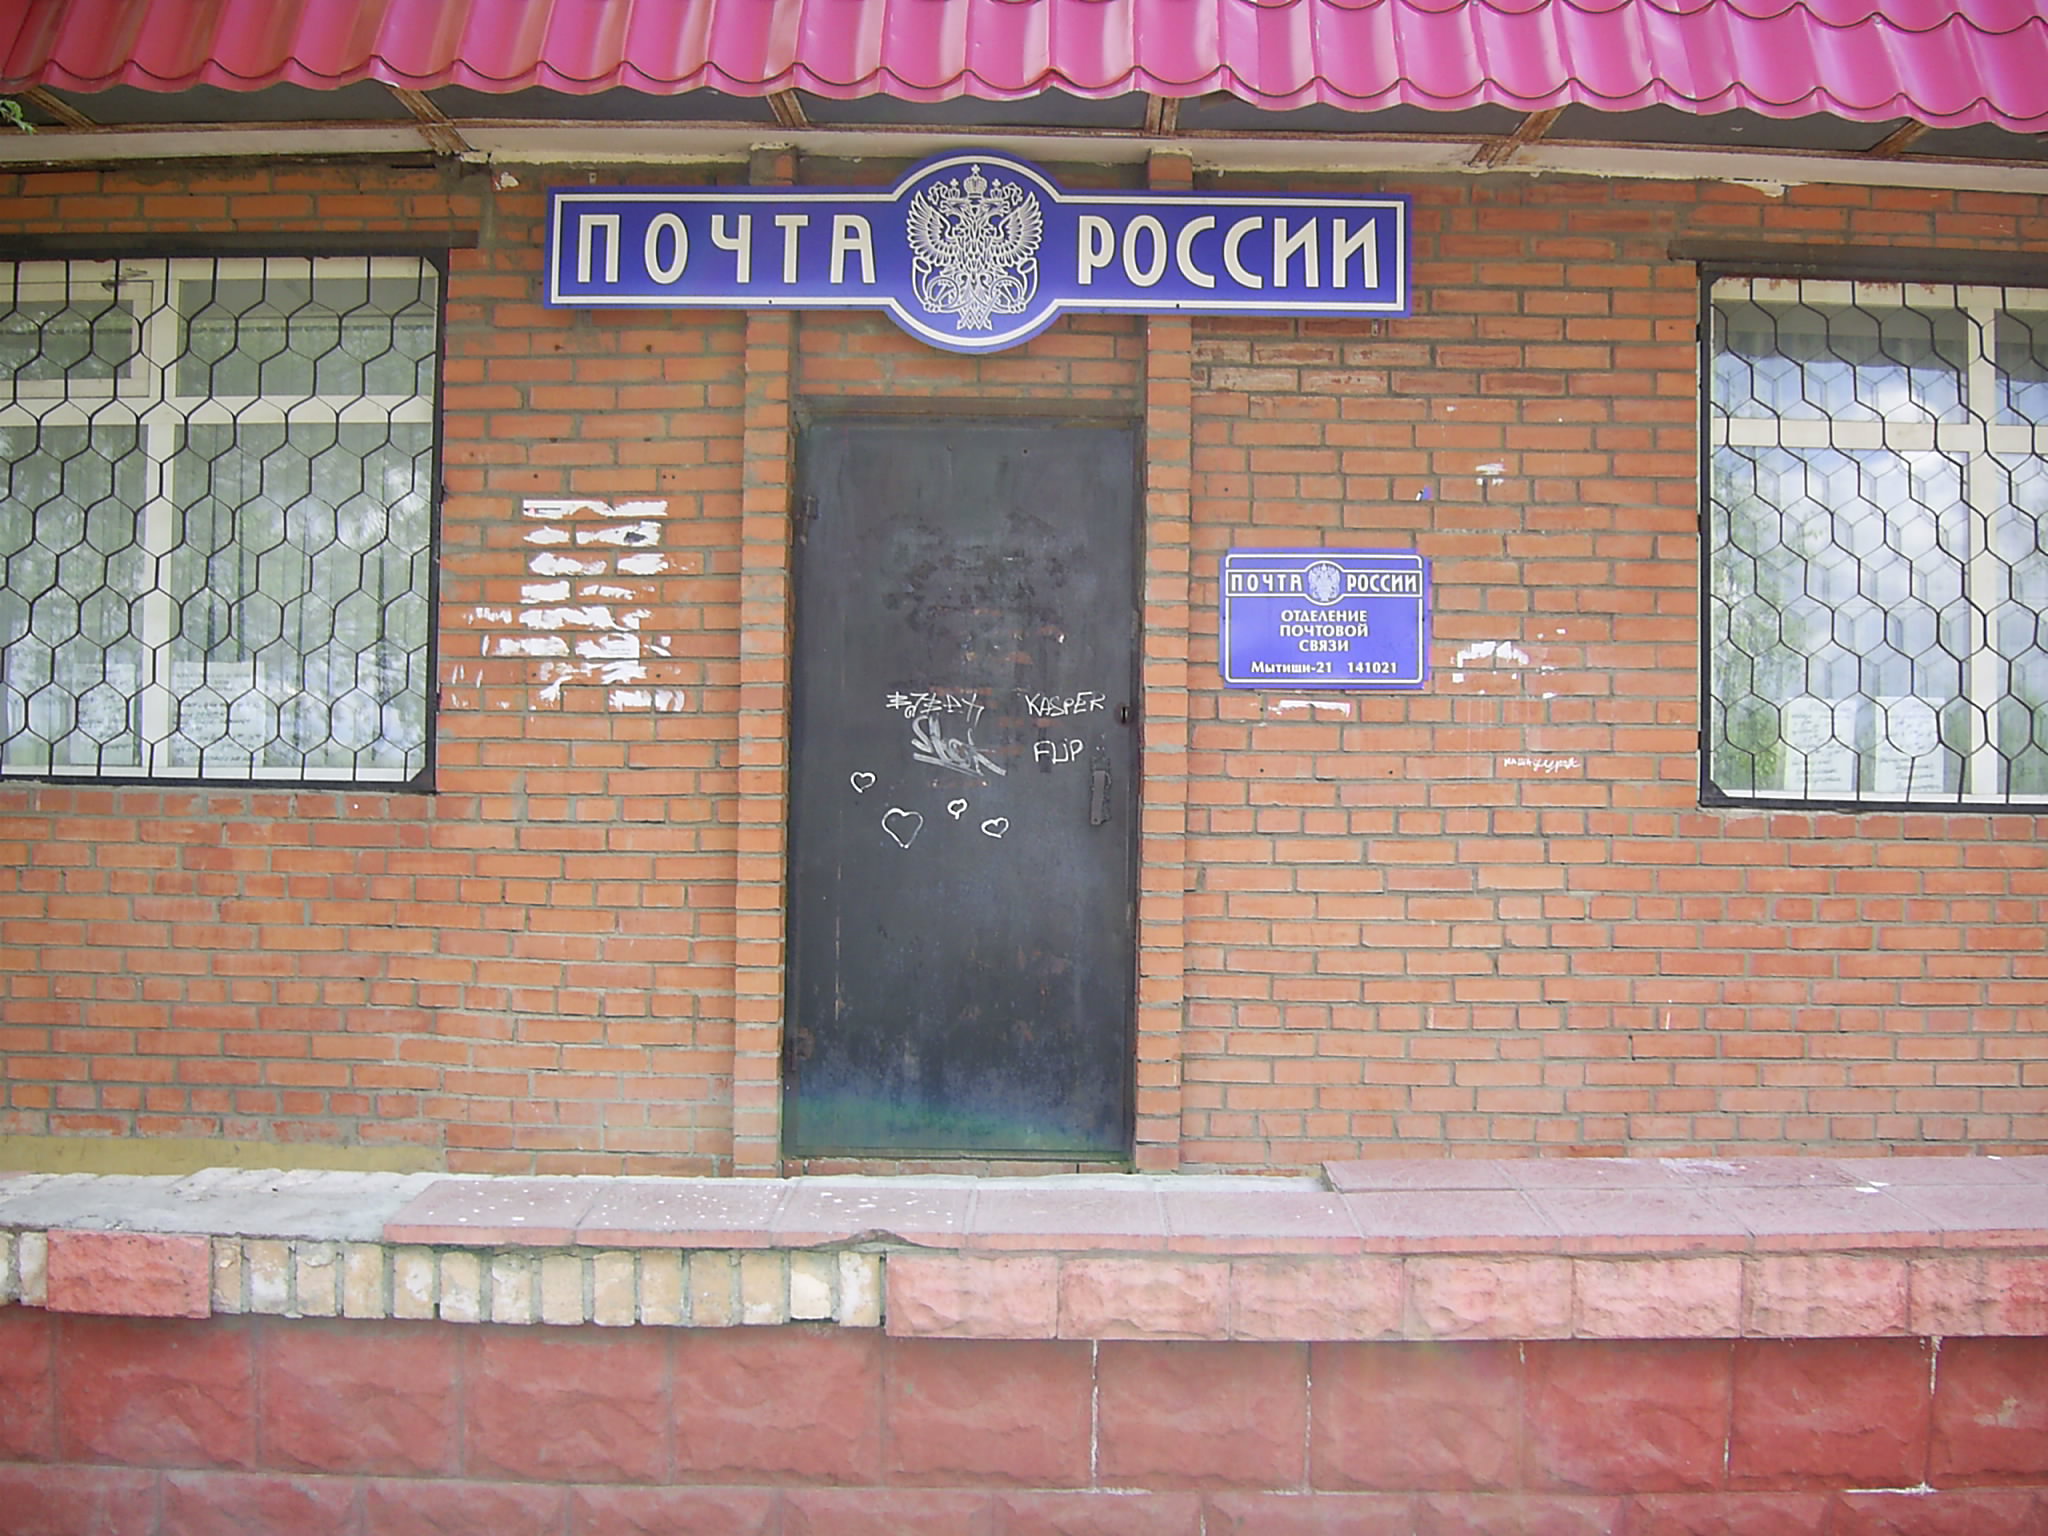 ФАСАД, отделение почтовой связи 141021, Московская обл., Мытищи